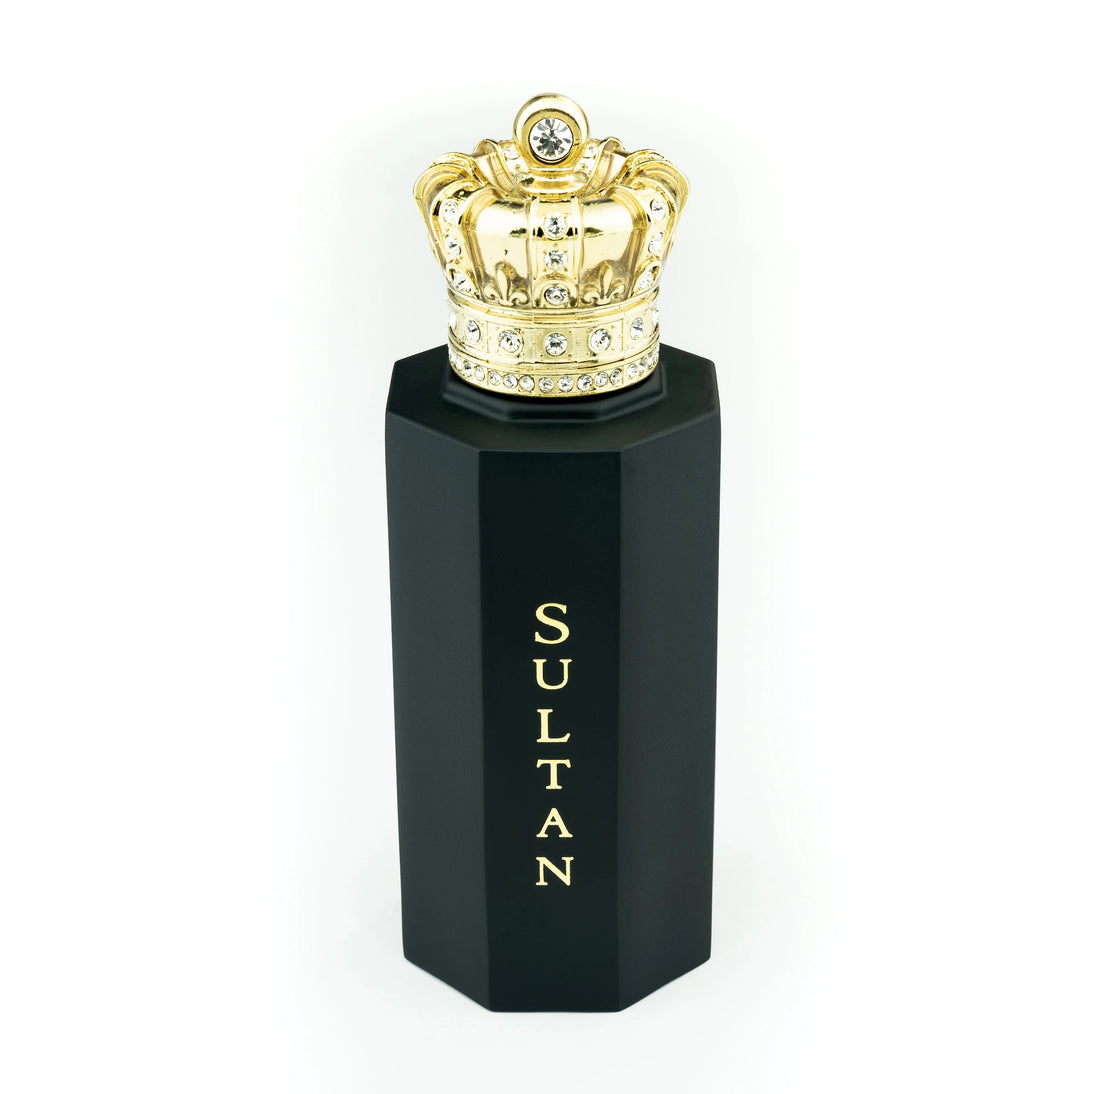 皇家皇冠帝国系列苏丹香水提取物 100ml